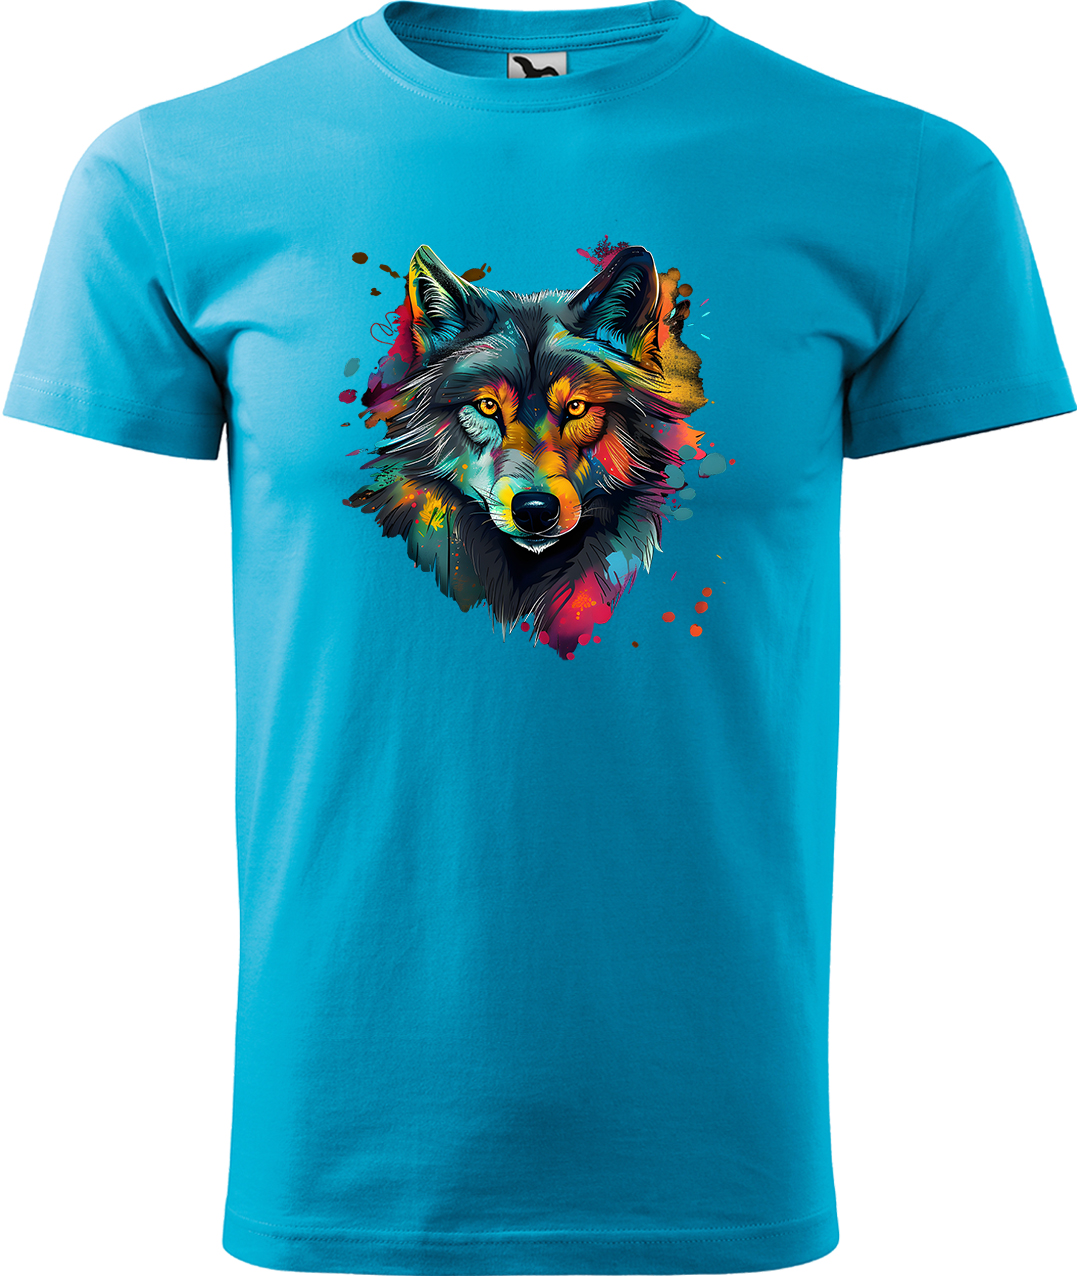 Pánské tričko s vlkem - Malovaný vlk Velikost: L, Barva: Tyrkysová (44), Střih: pánský